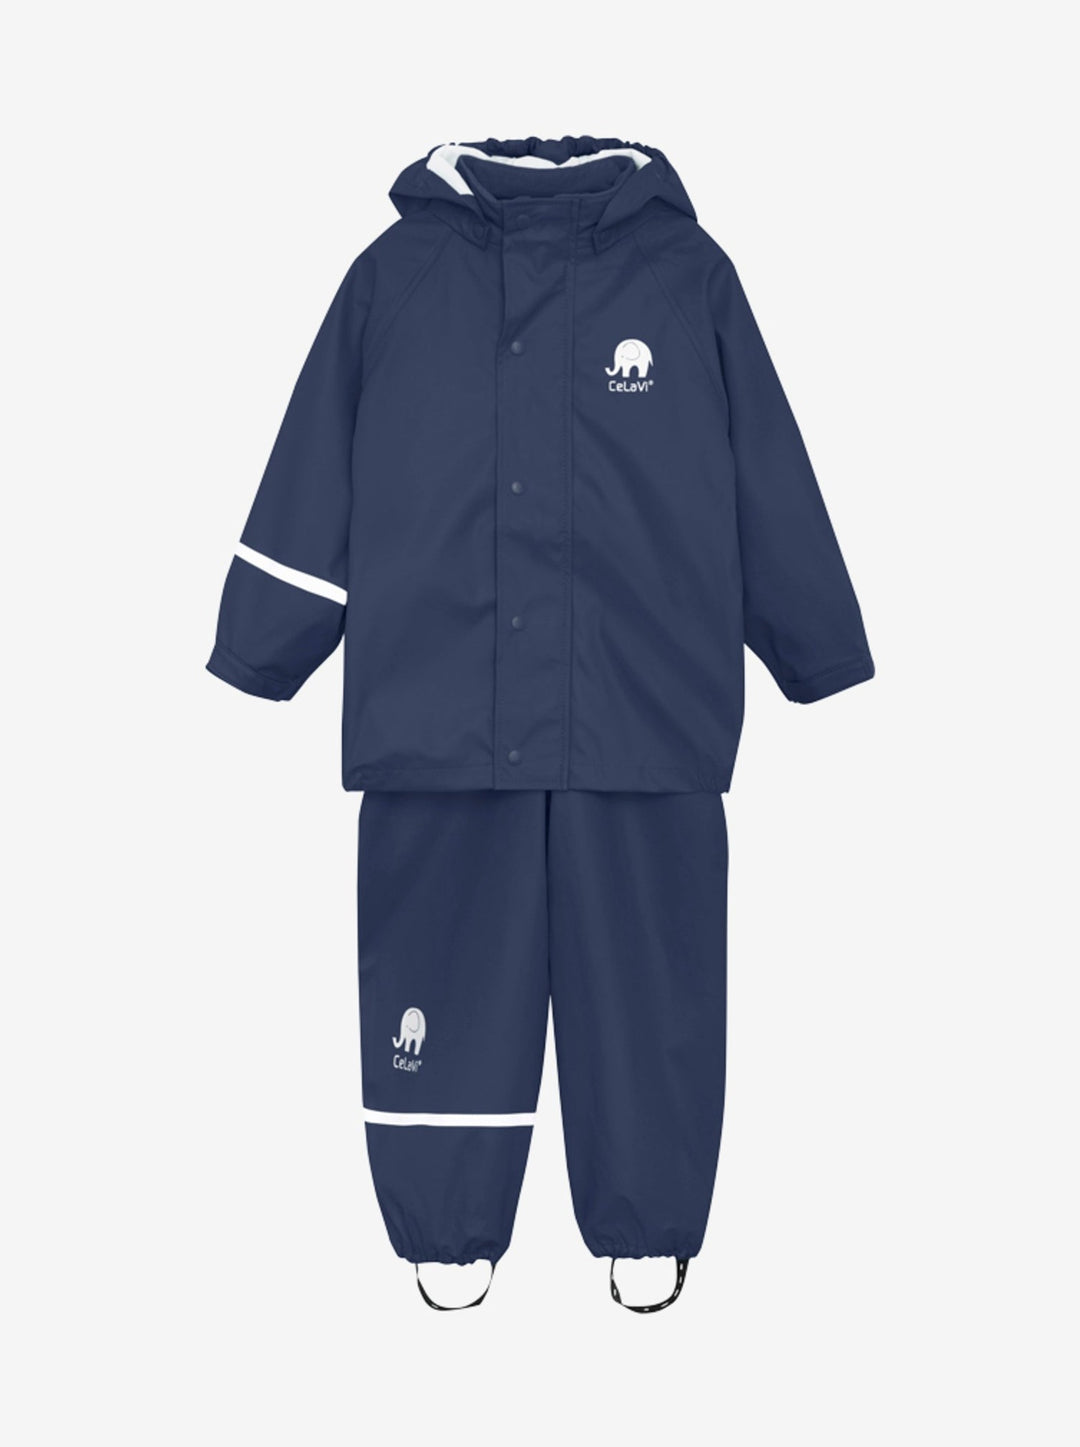 Celavi Spodnie przeciwdeszczowe dla dzieci kurtka przeciwdeszczowa dziecięca Dark Navy 100cm